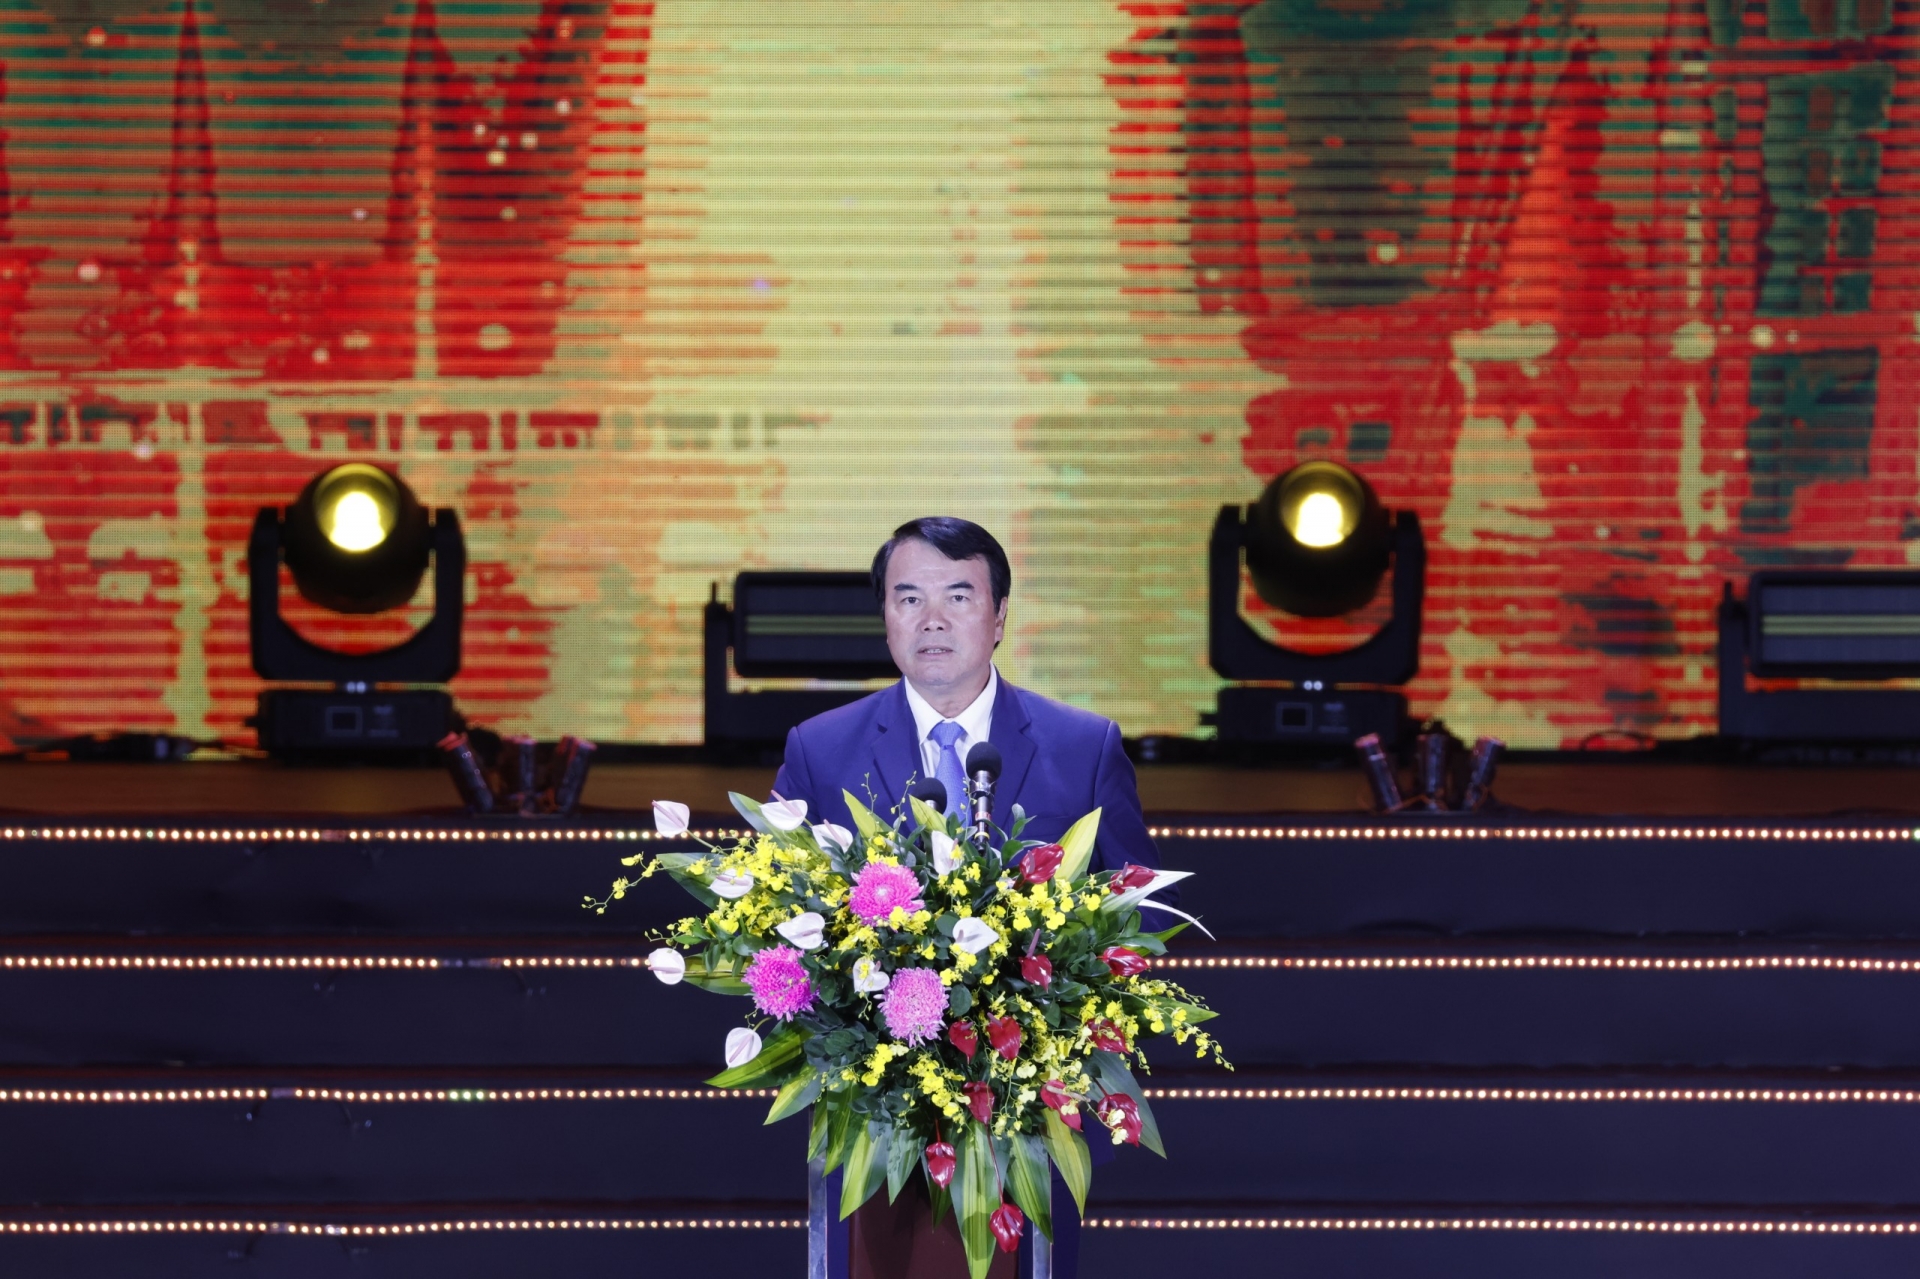 Phó Chủ tịch UBND tỉnh Lâm Đồng phát biểu chào mừng